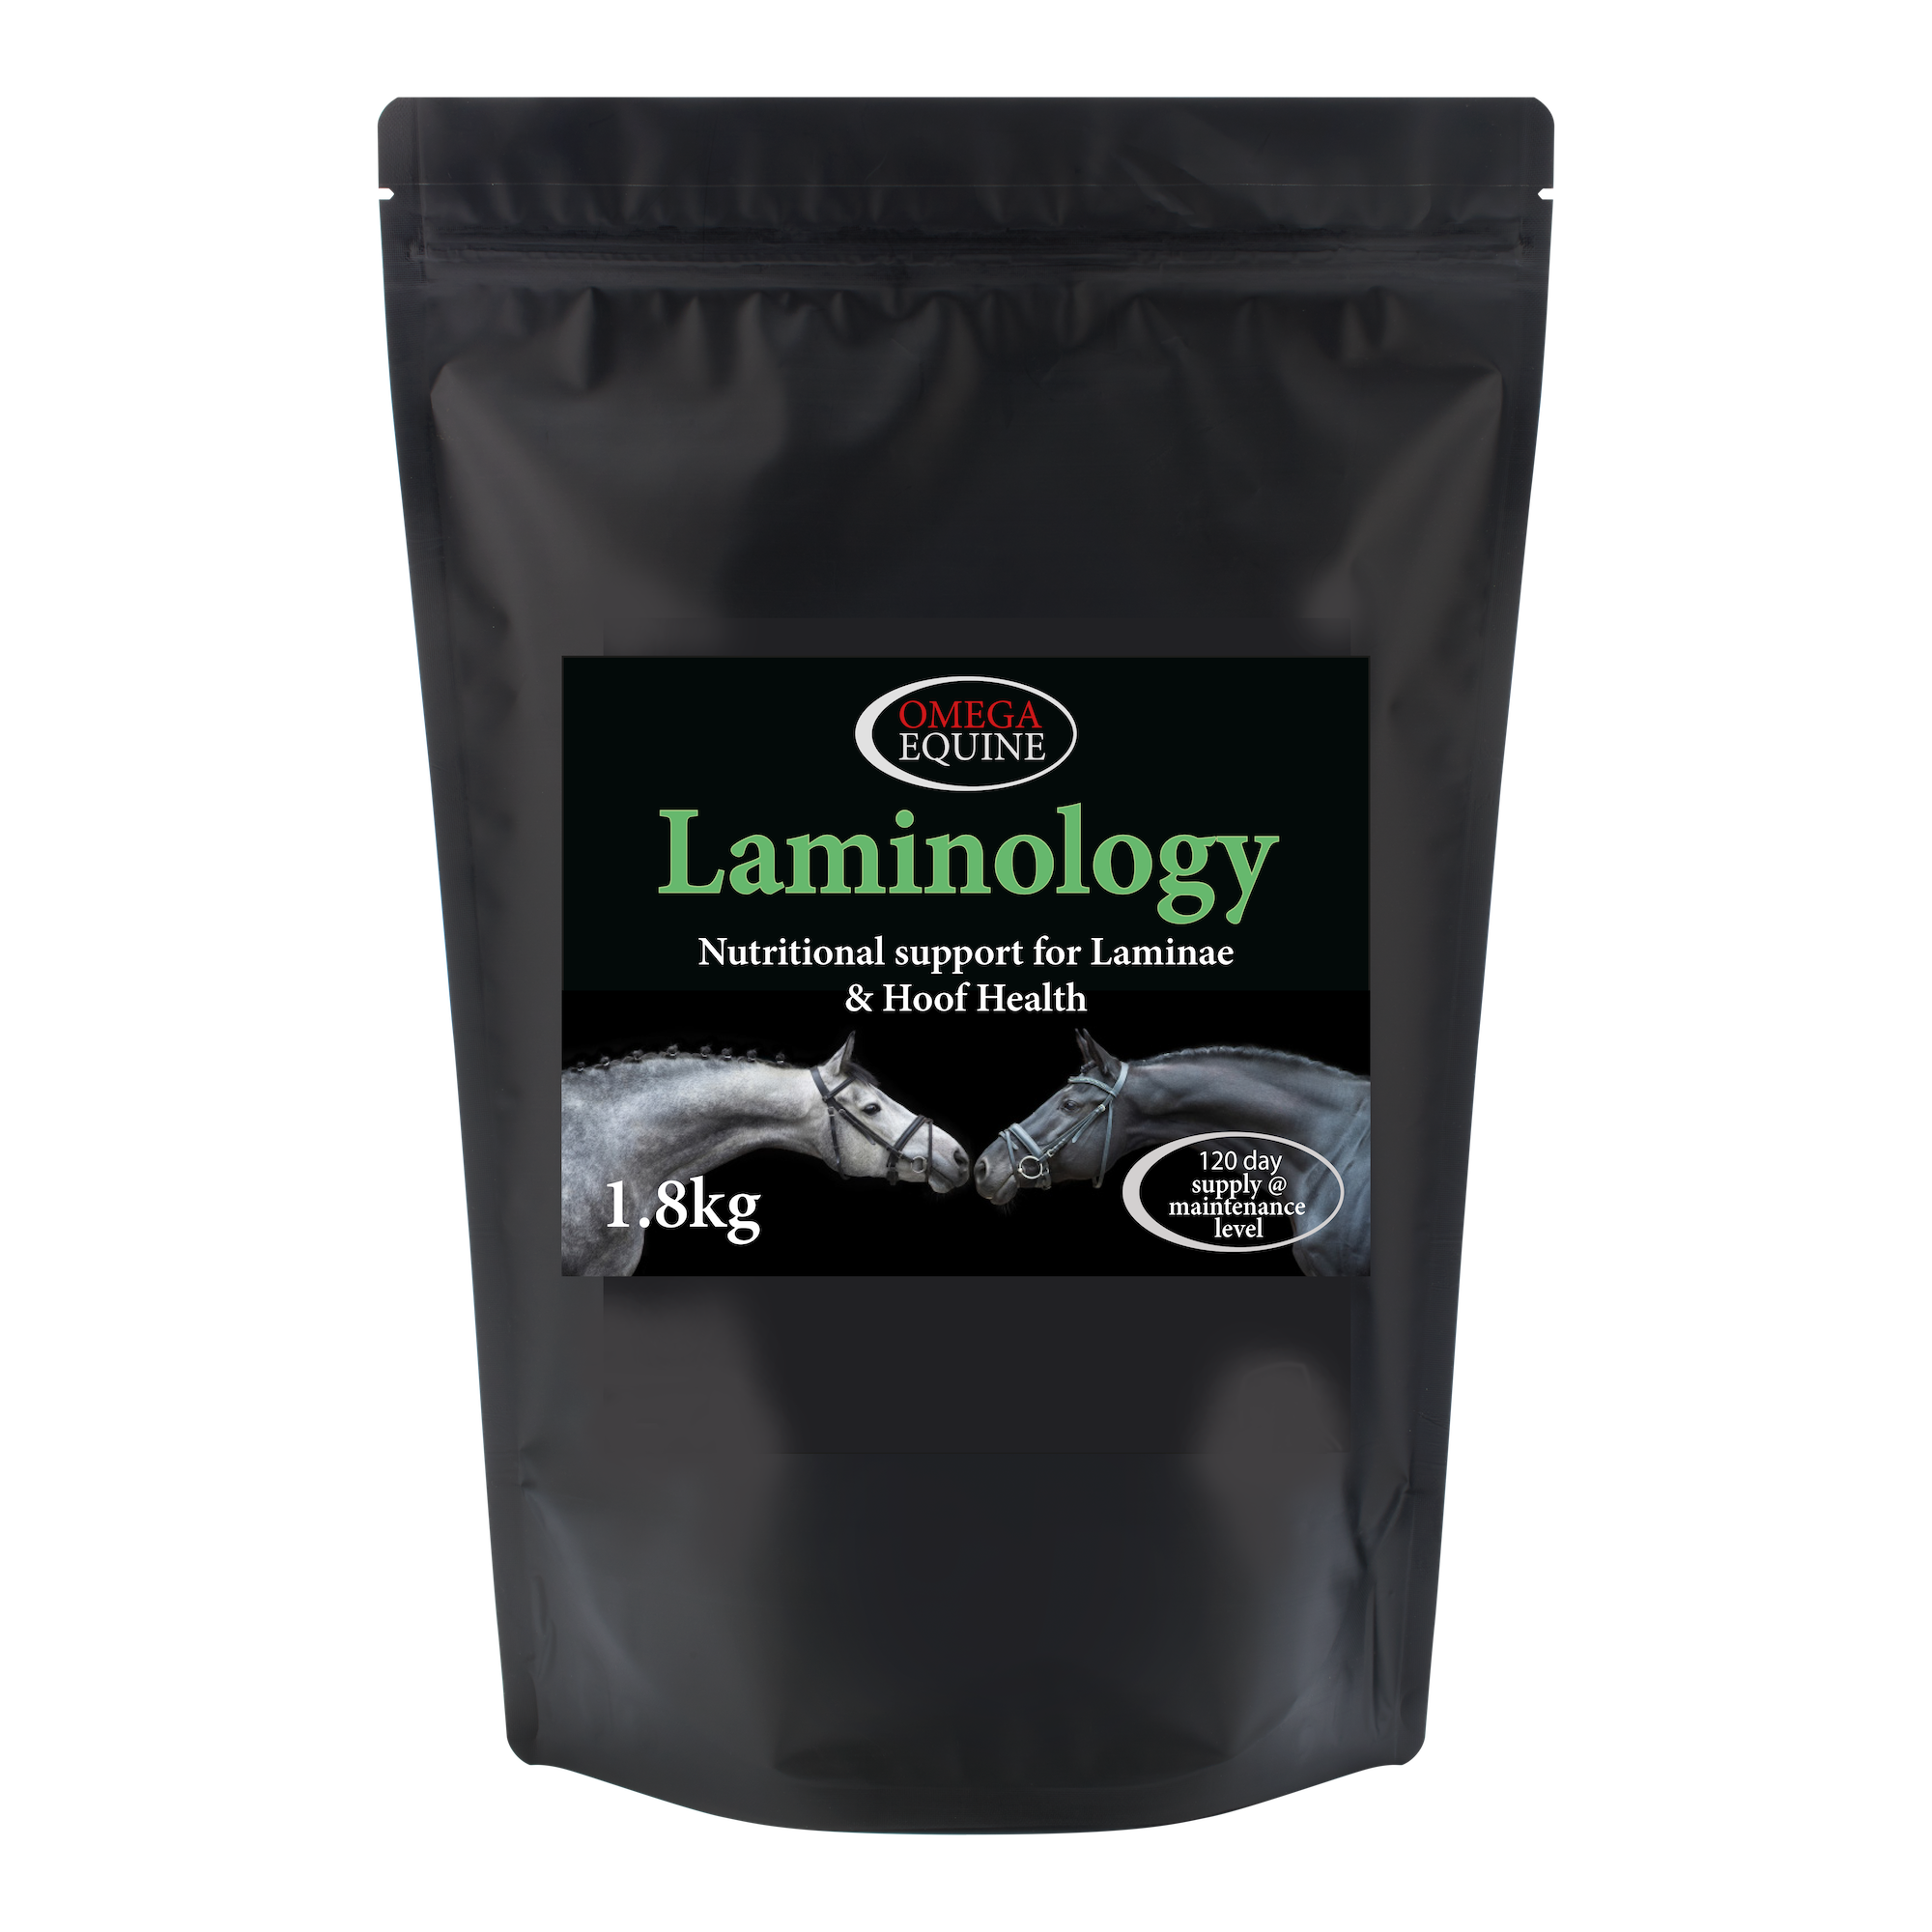 Omega Laminology